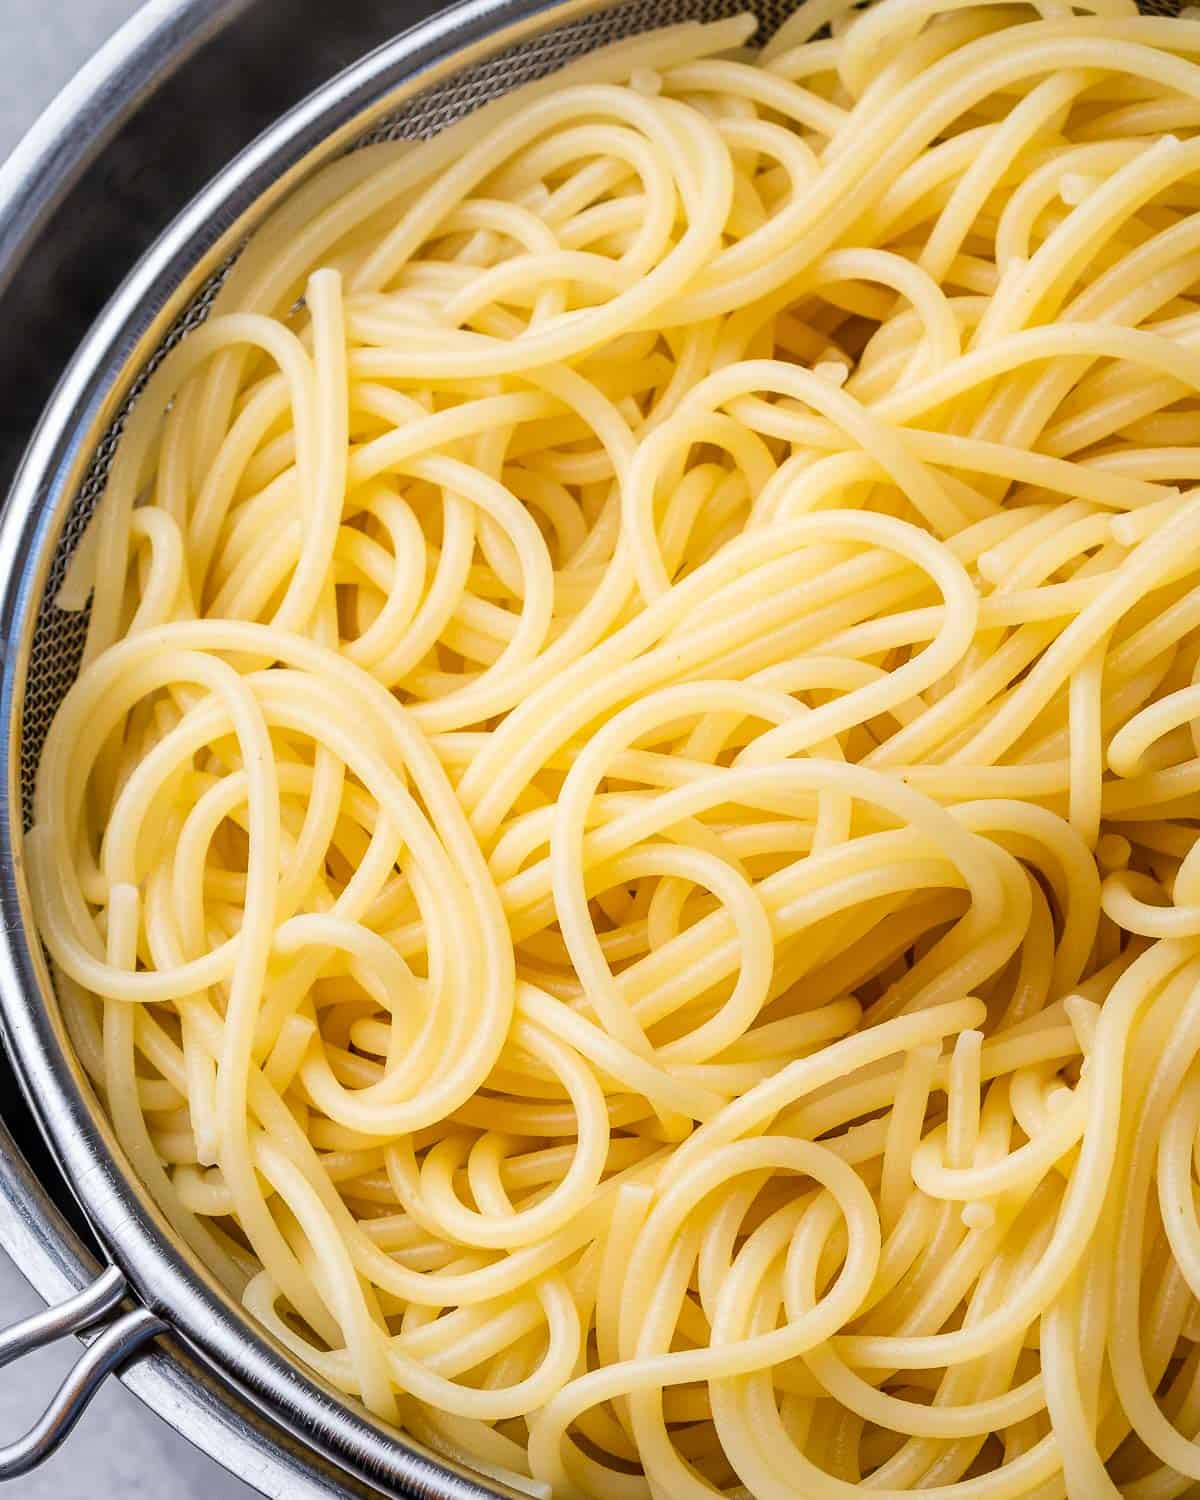 spaghetti in a colander to drain